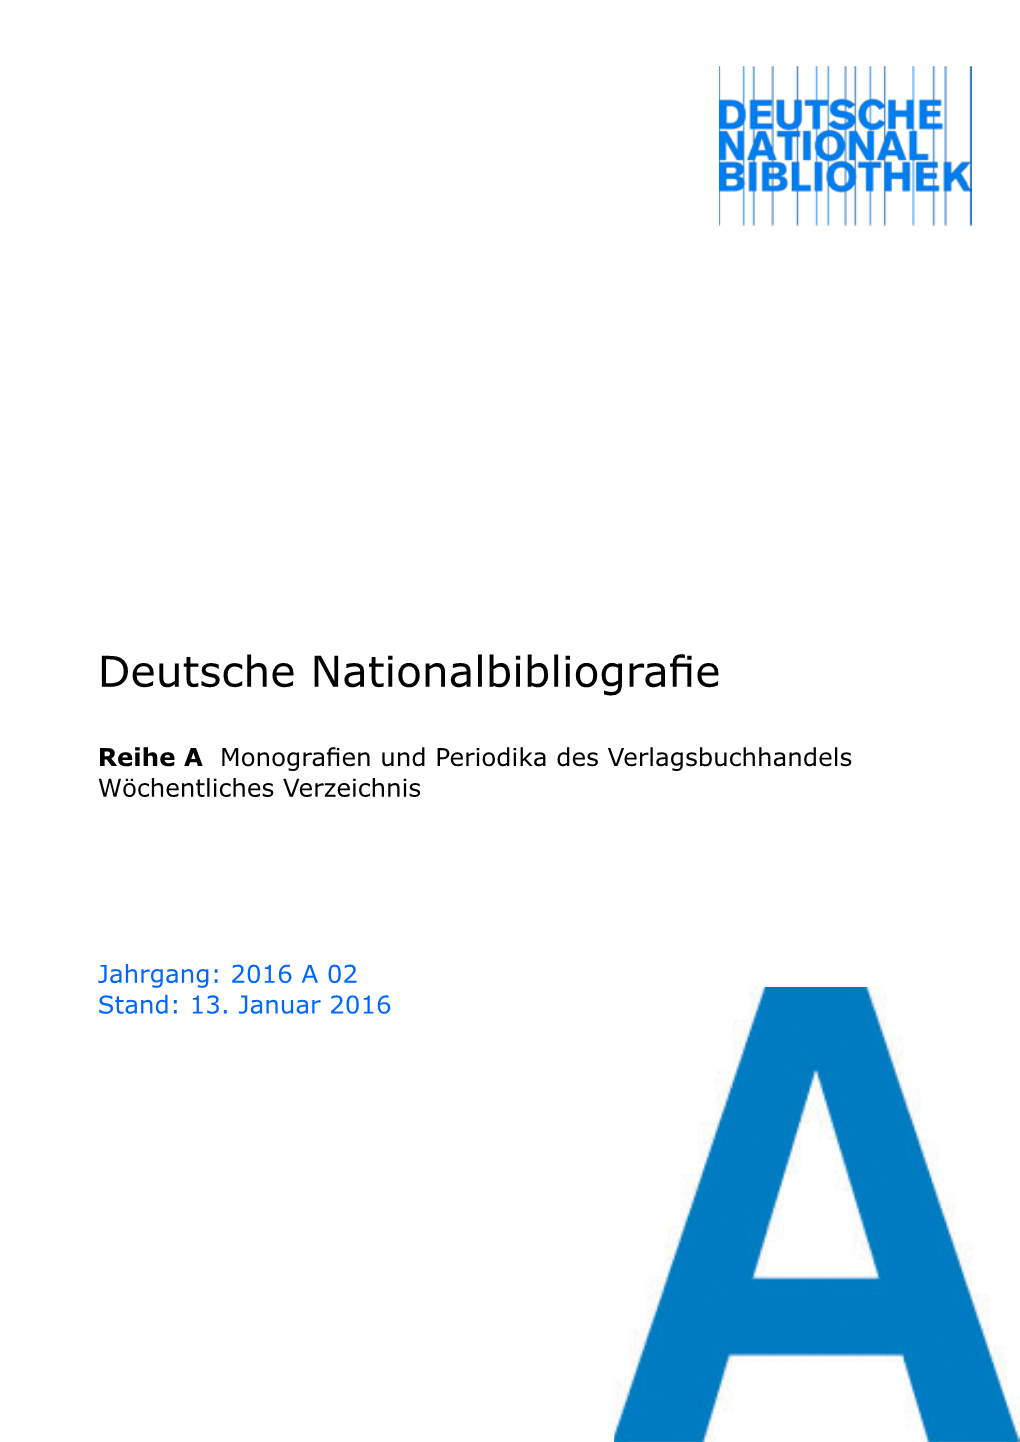 Deutsche Nationalbibliografie 2016 a 02